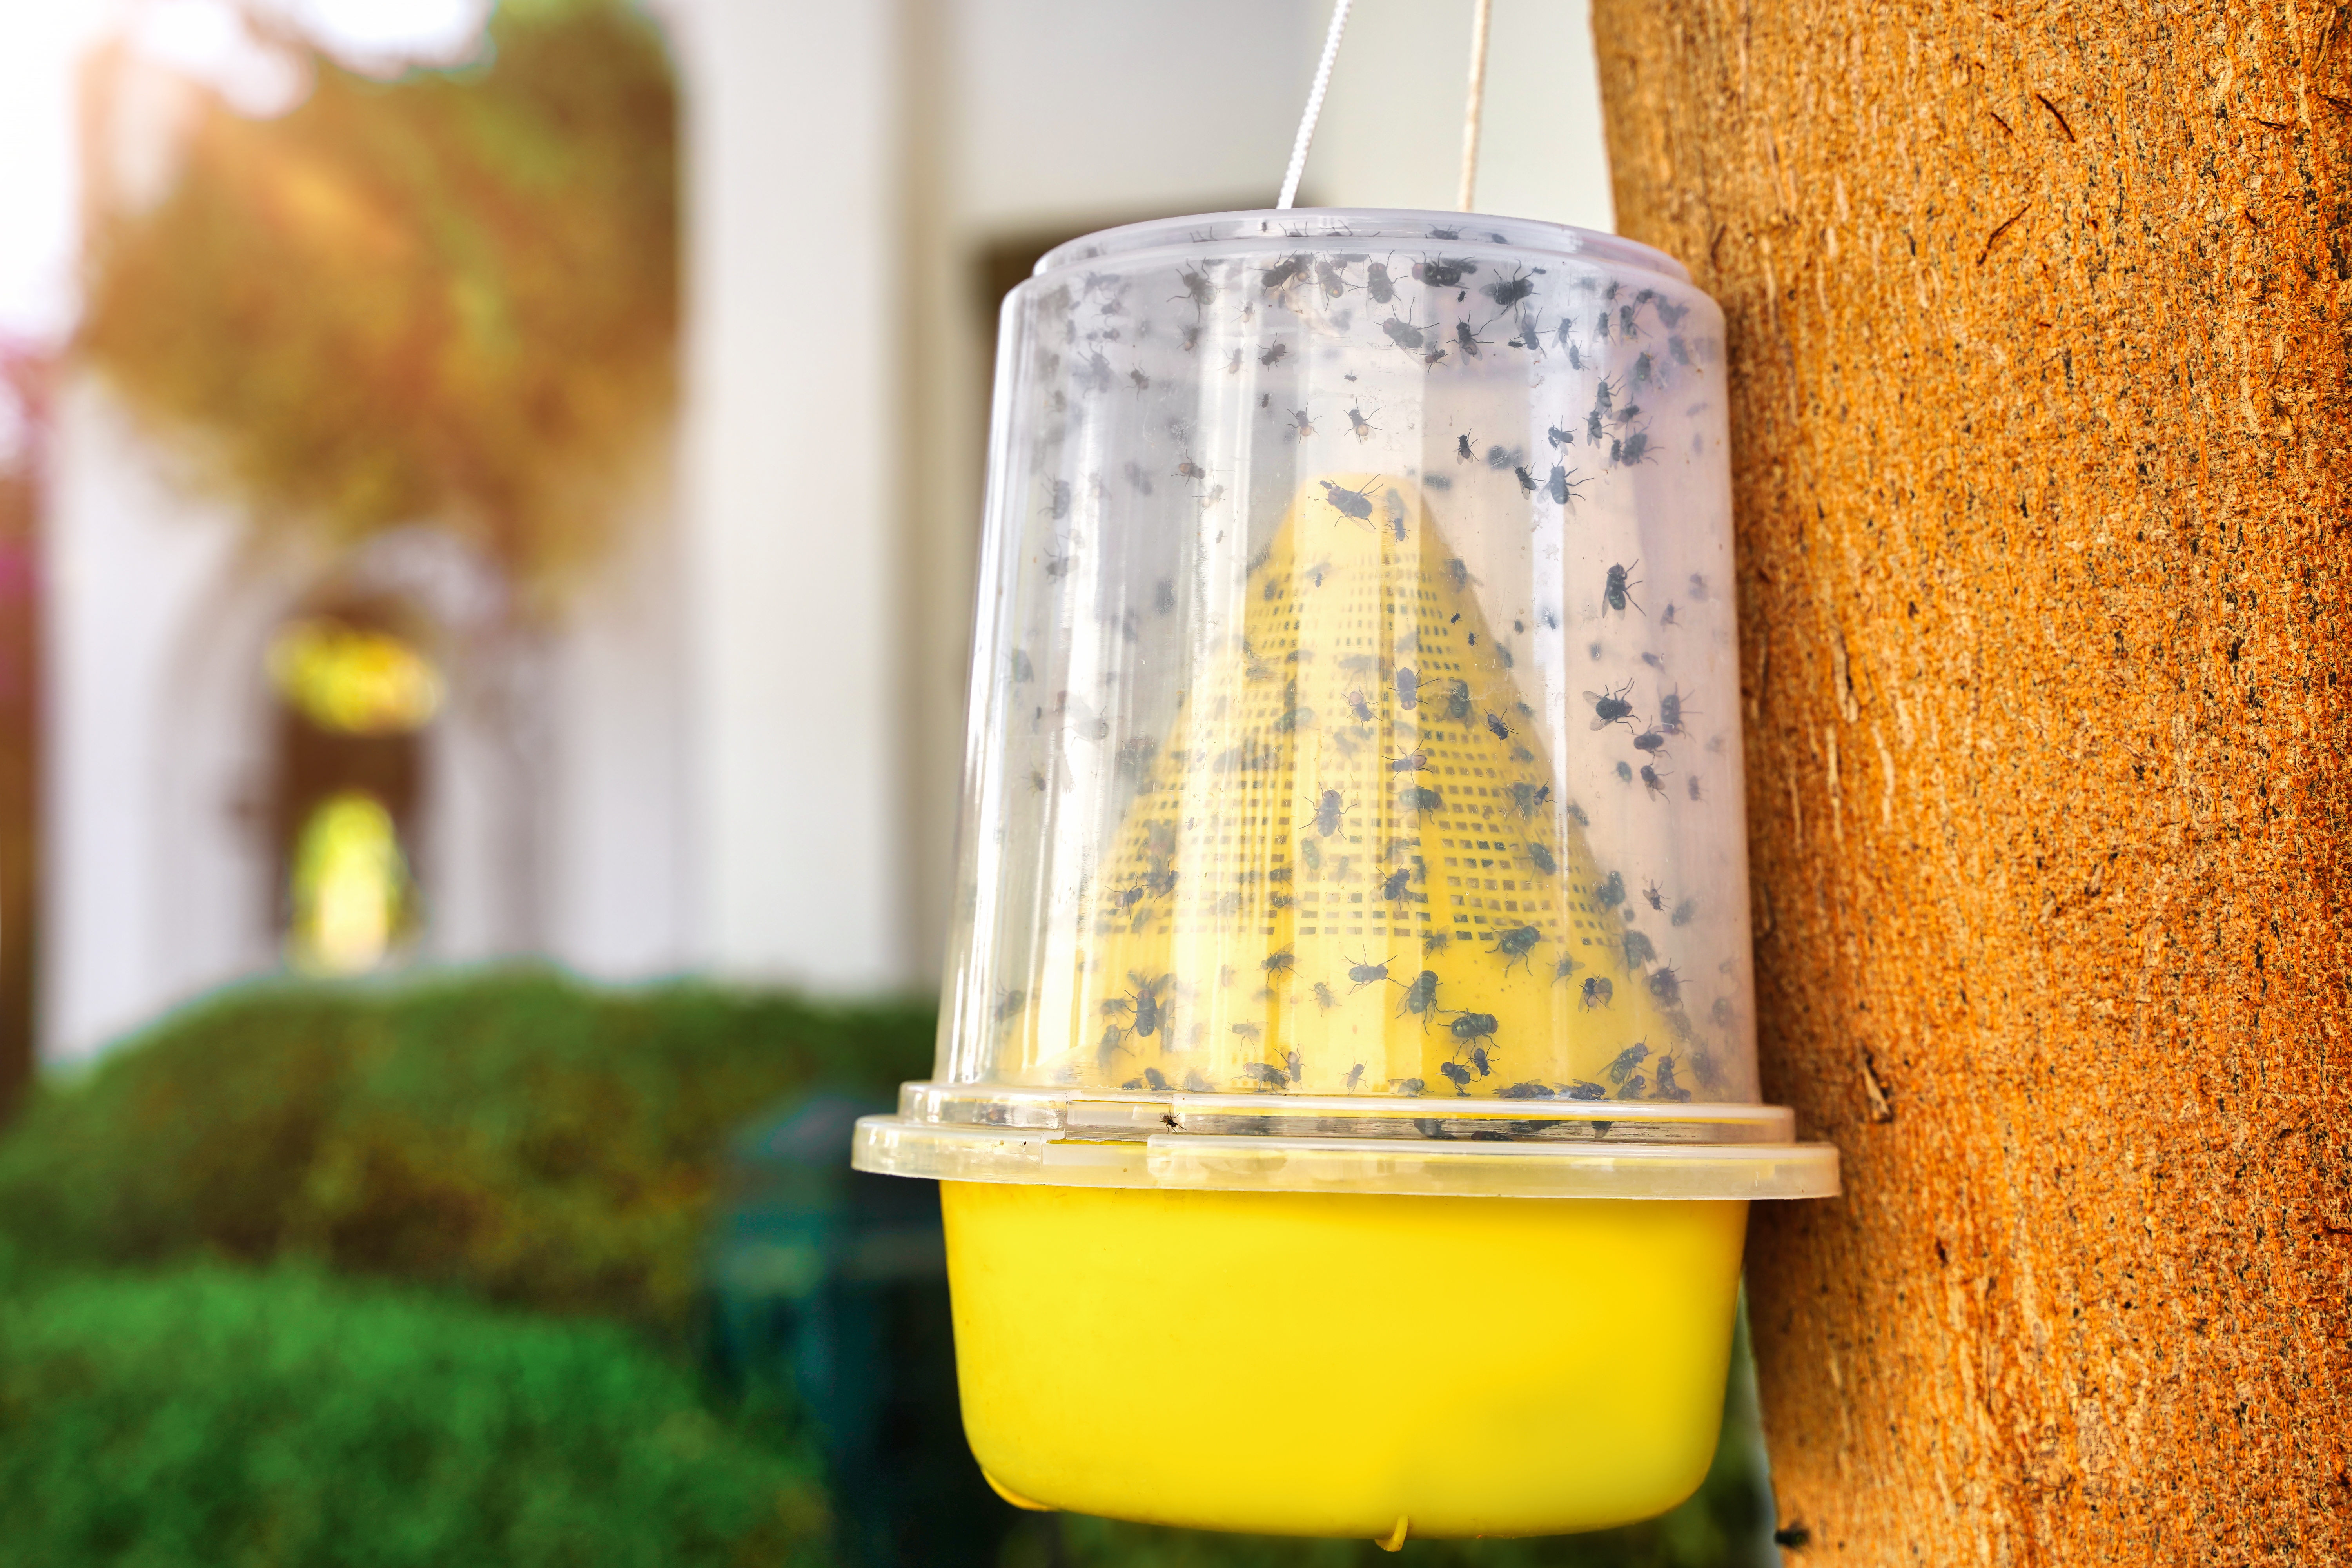 Dès le printemps, les mouches font leur grand retour dès les premières chaleurs. Copyright (c) 2021 Evgeniya Sheydt/Shutterstock